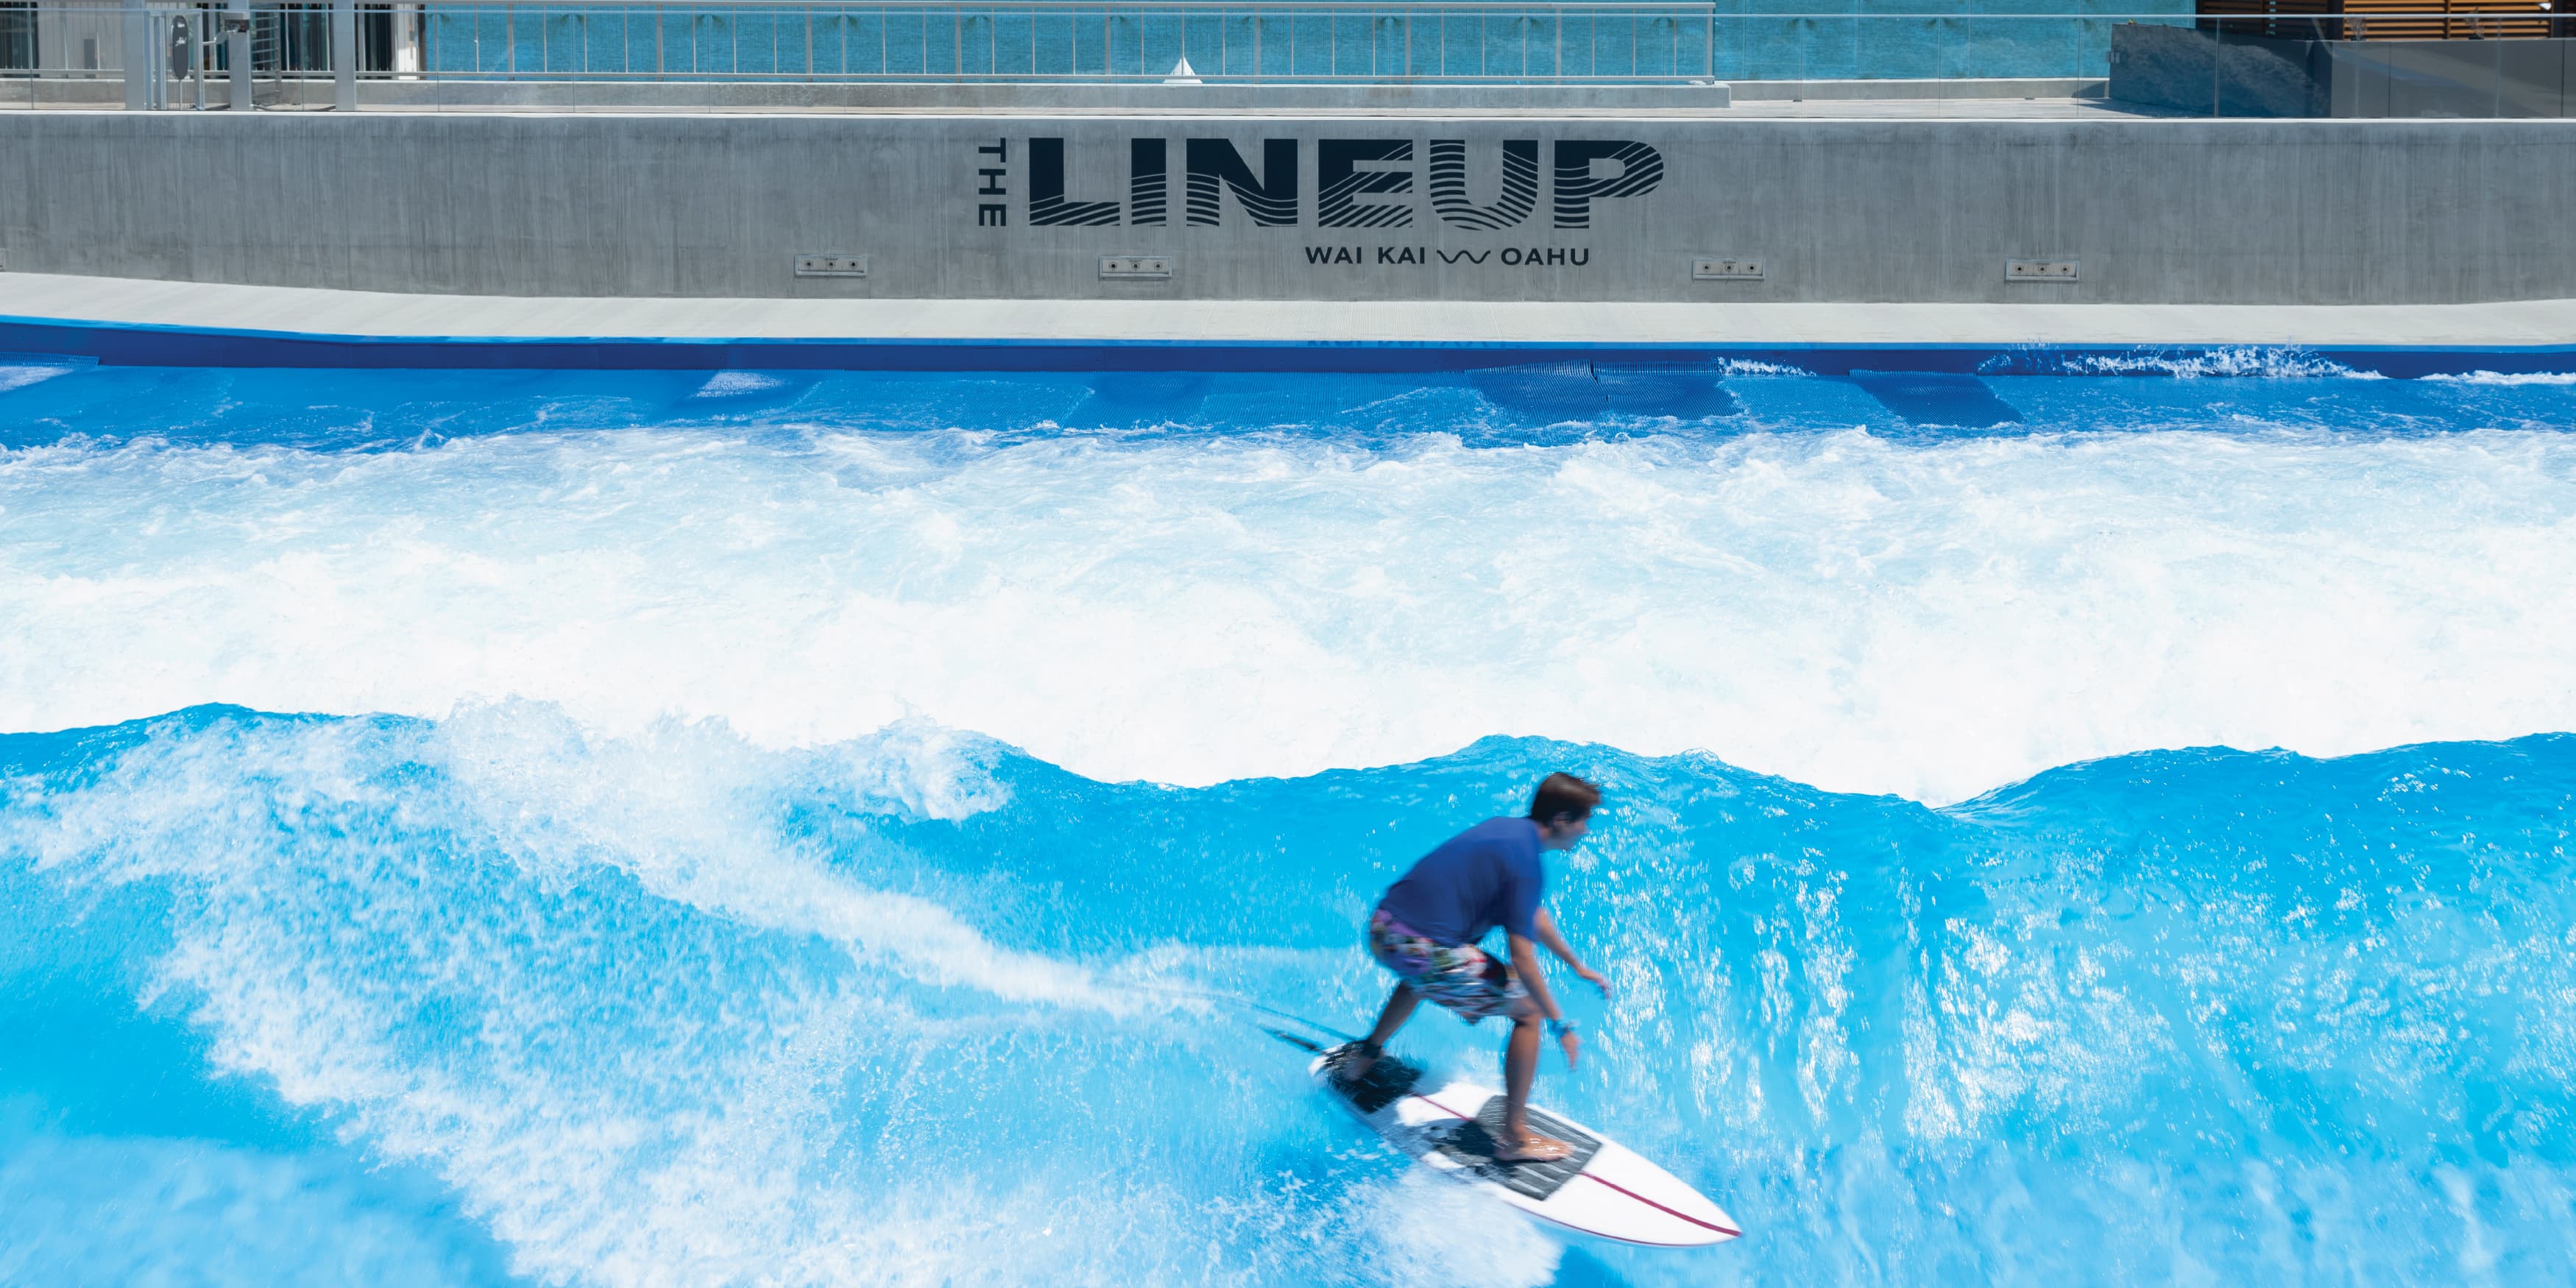 Surf - The LineUp at Wai Kai